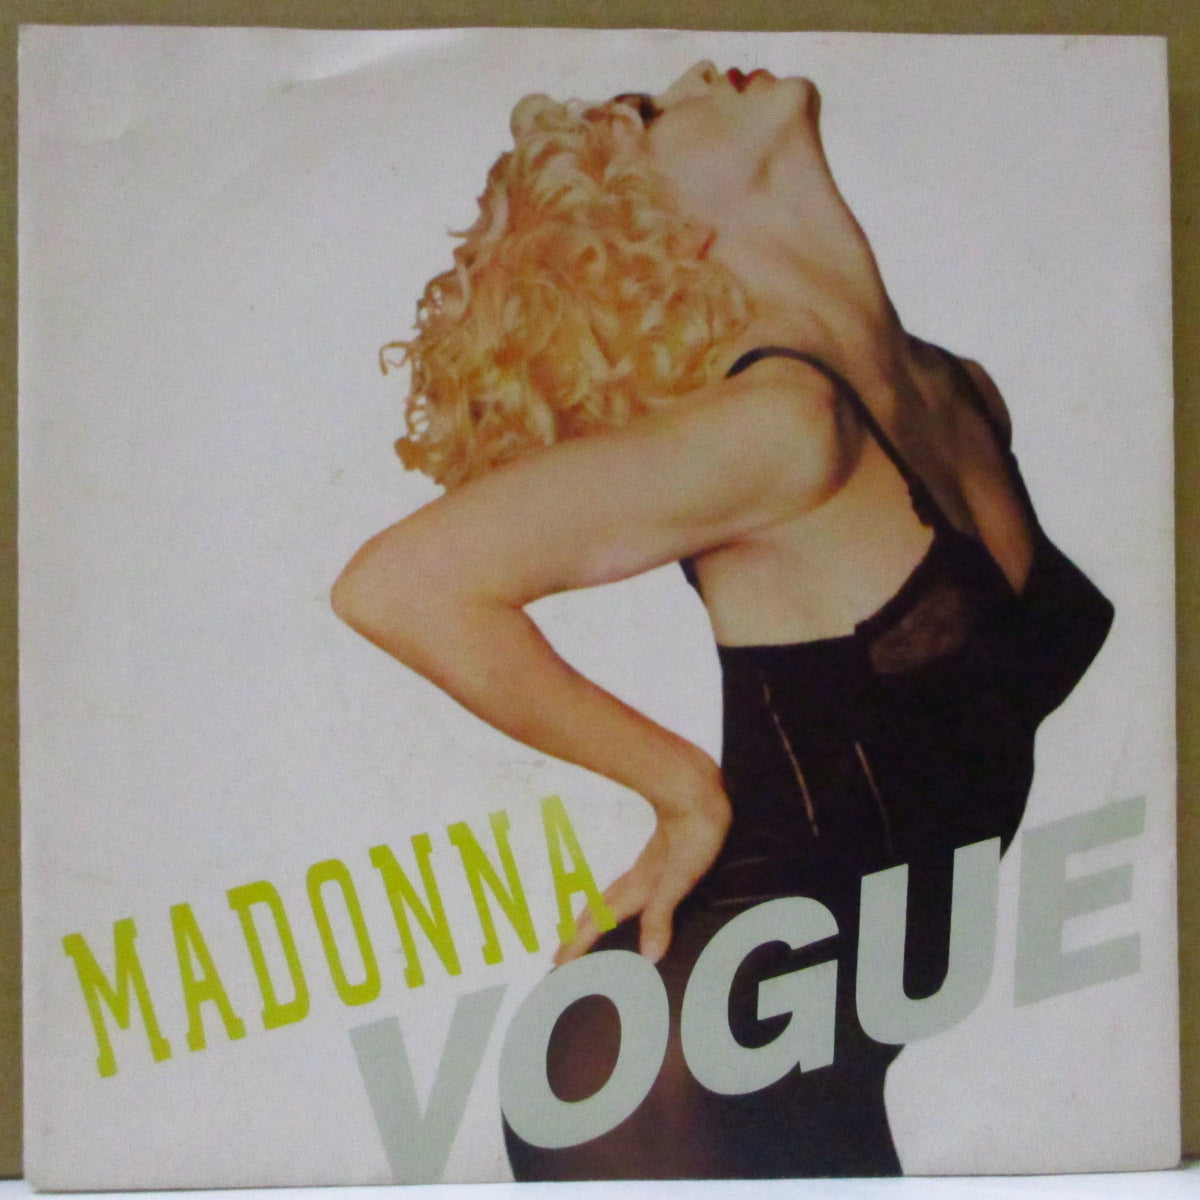 MADONNA (マドンナ) - Vogue (EU オリジナル 7